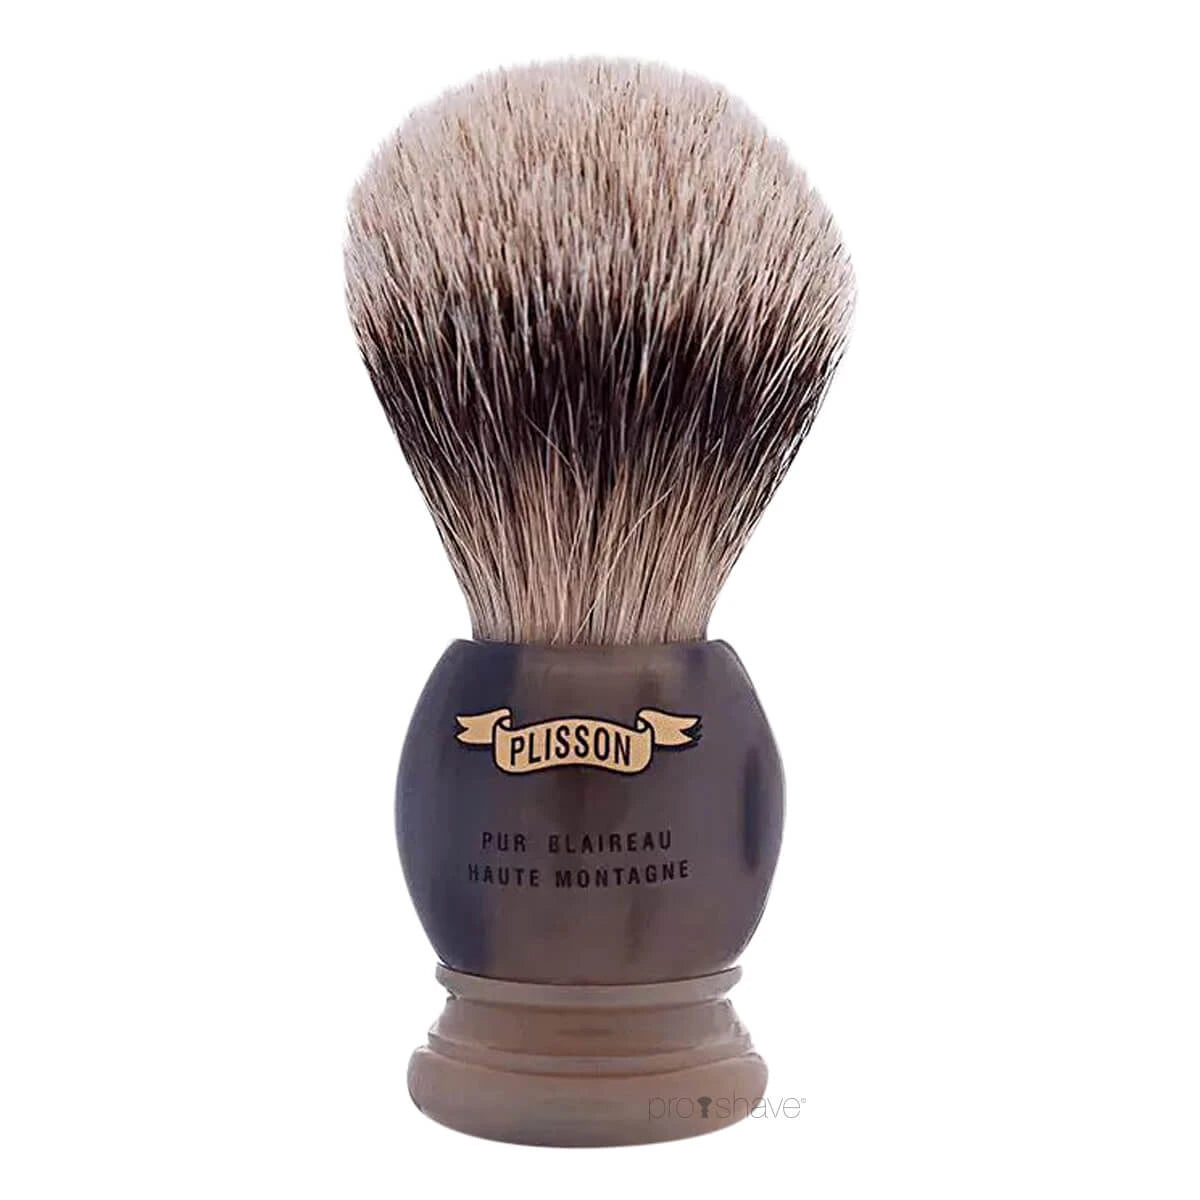 Plisson Shaving Brush, High Mountain White Badger & Genuine Horn- Size 18